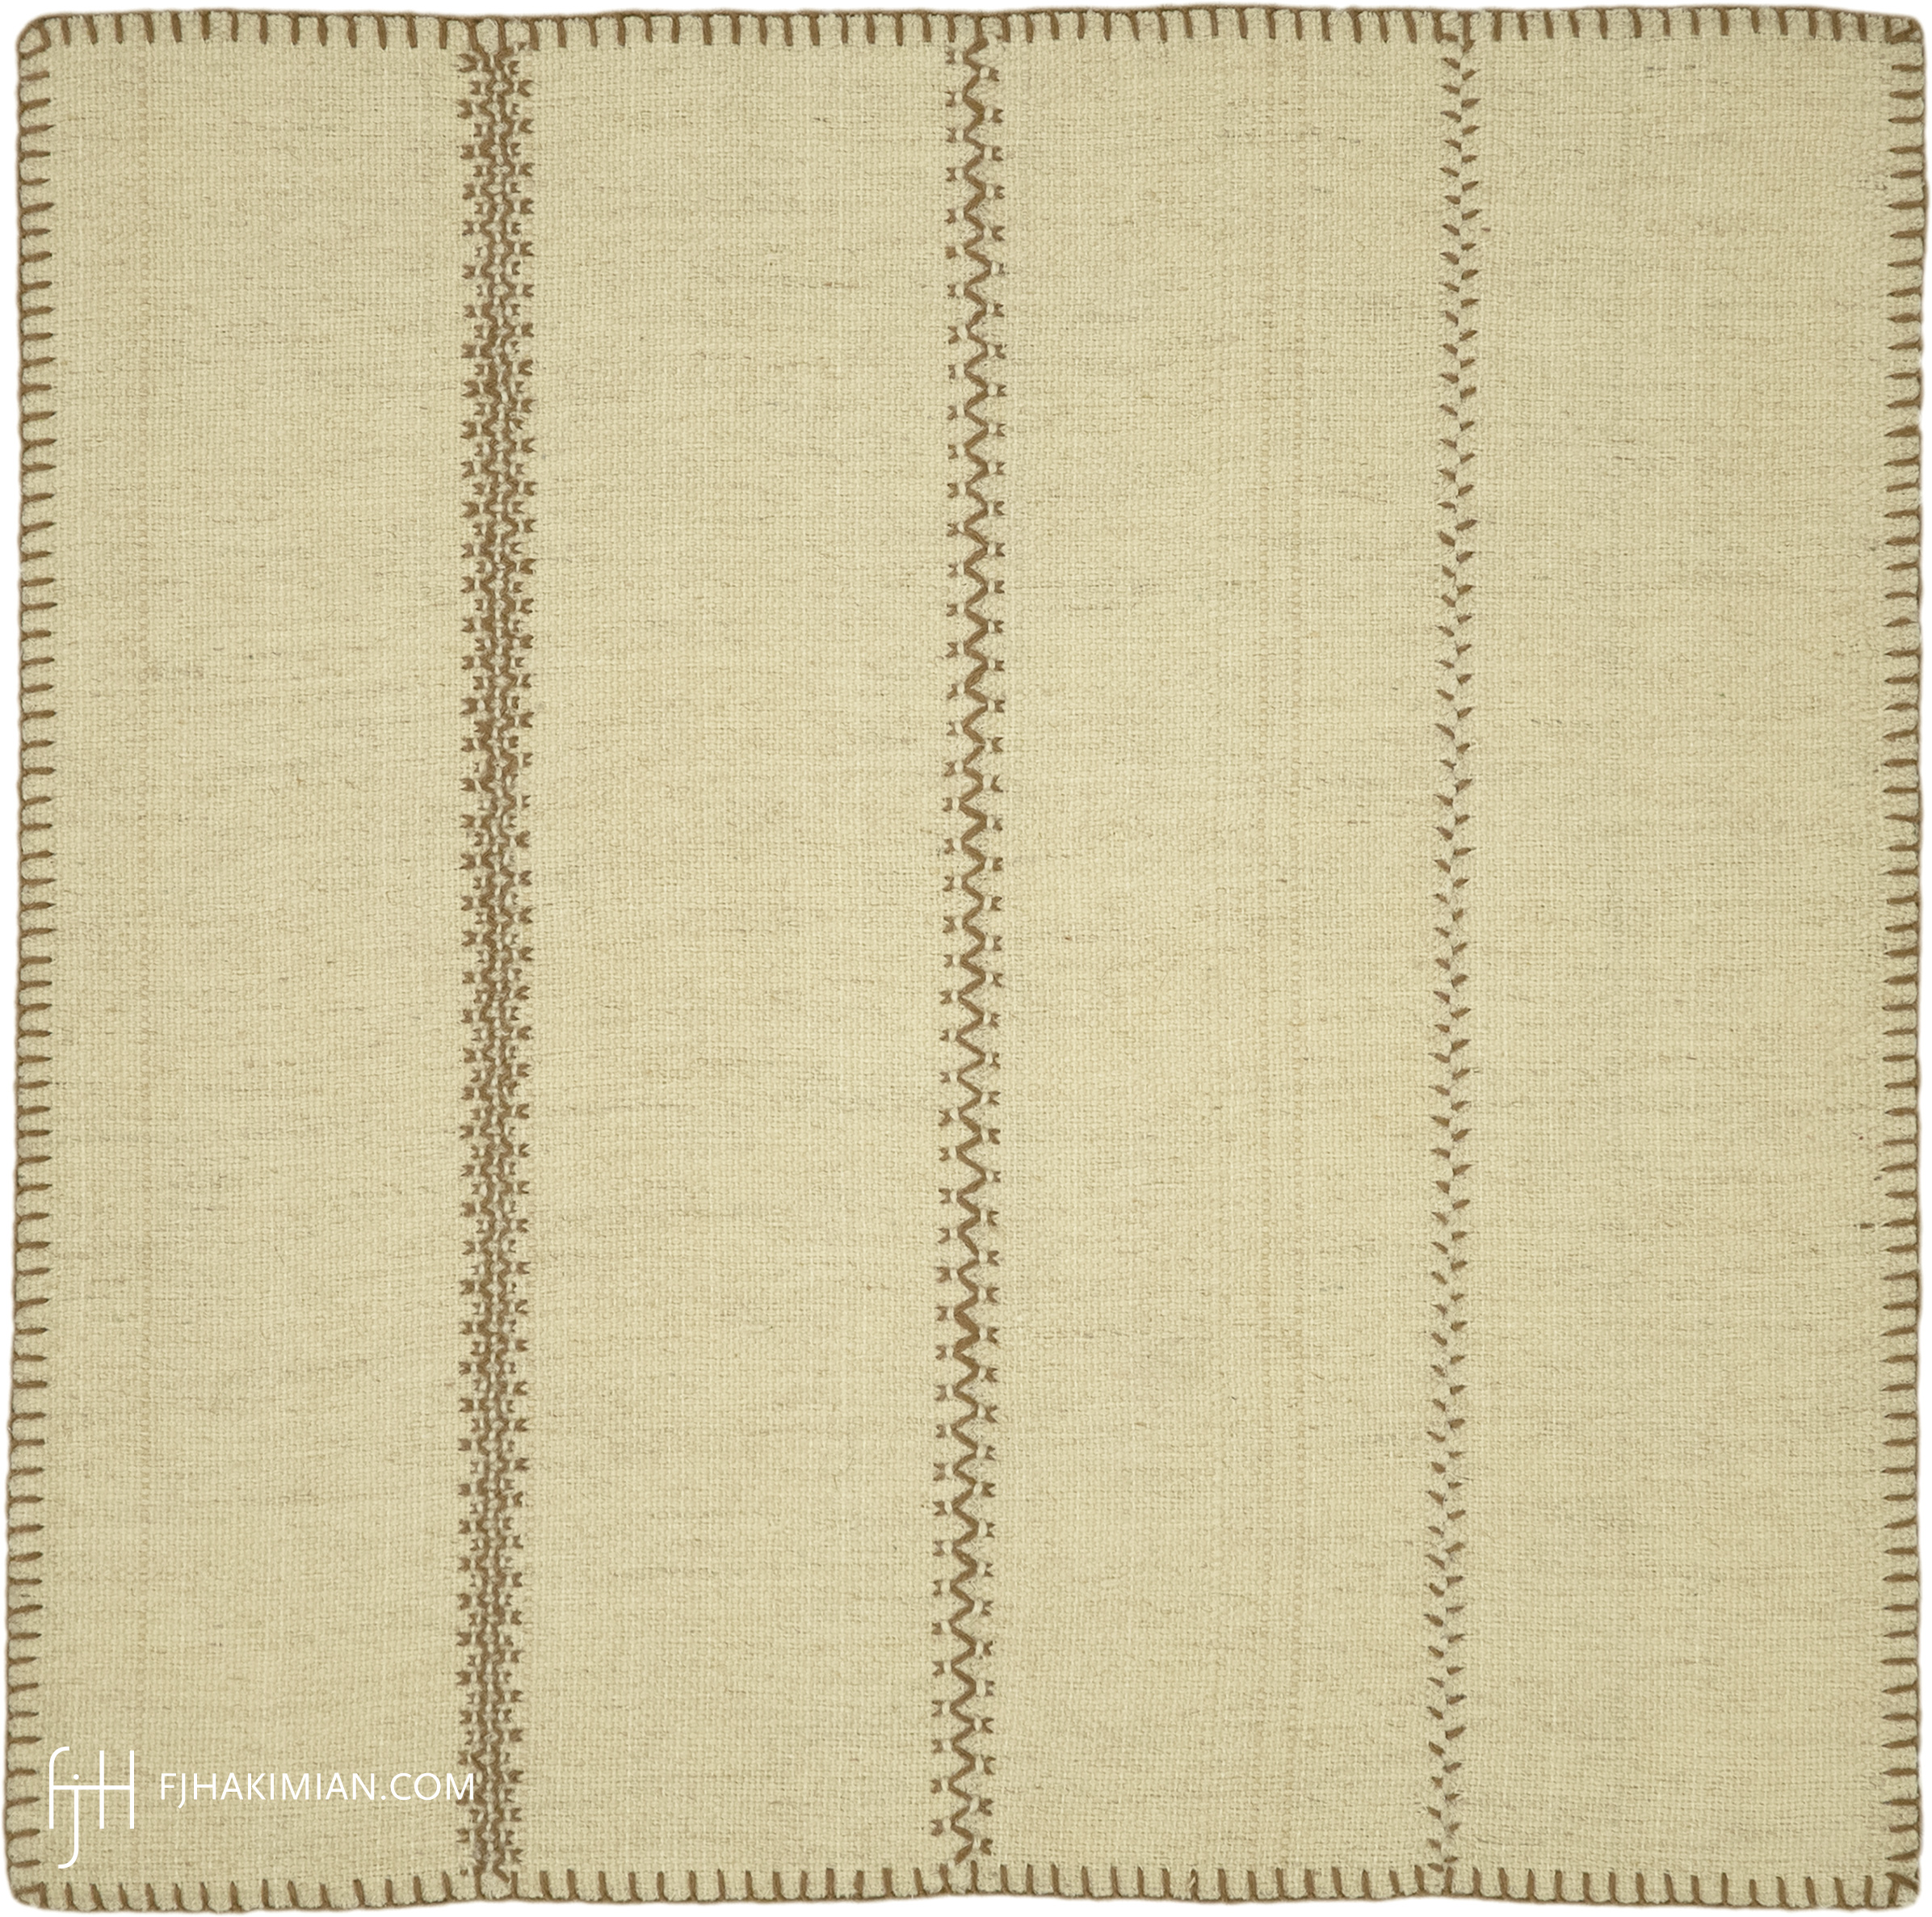 FJ Hakimian | 37582 | Custom Carpet